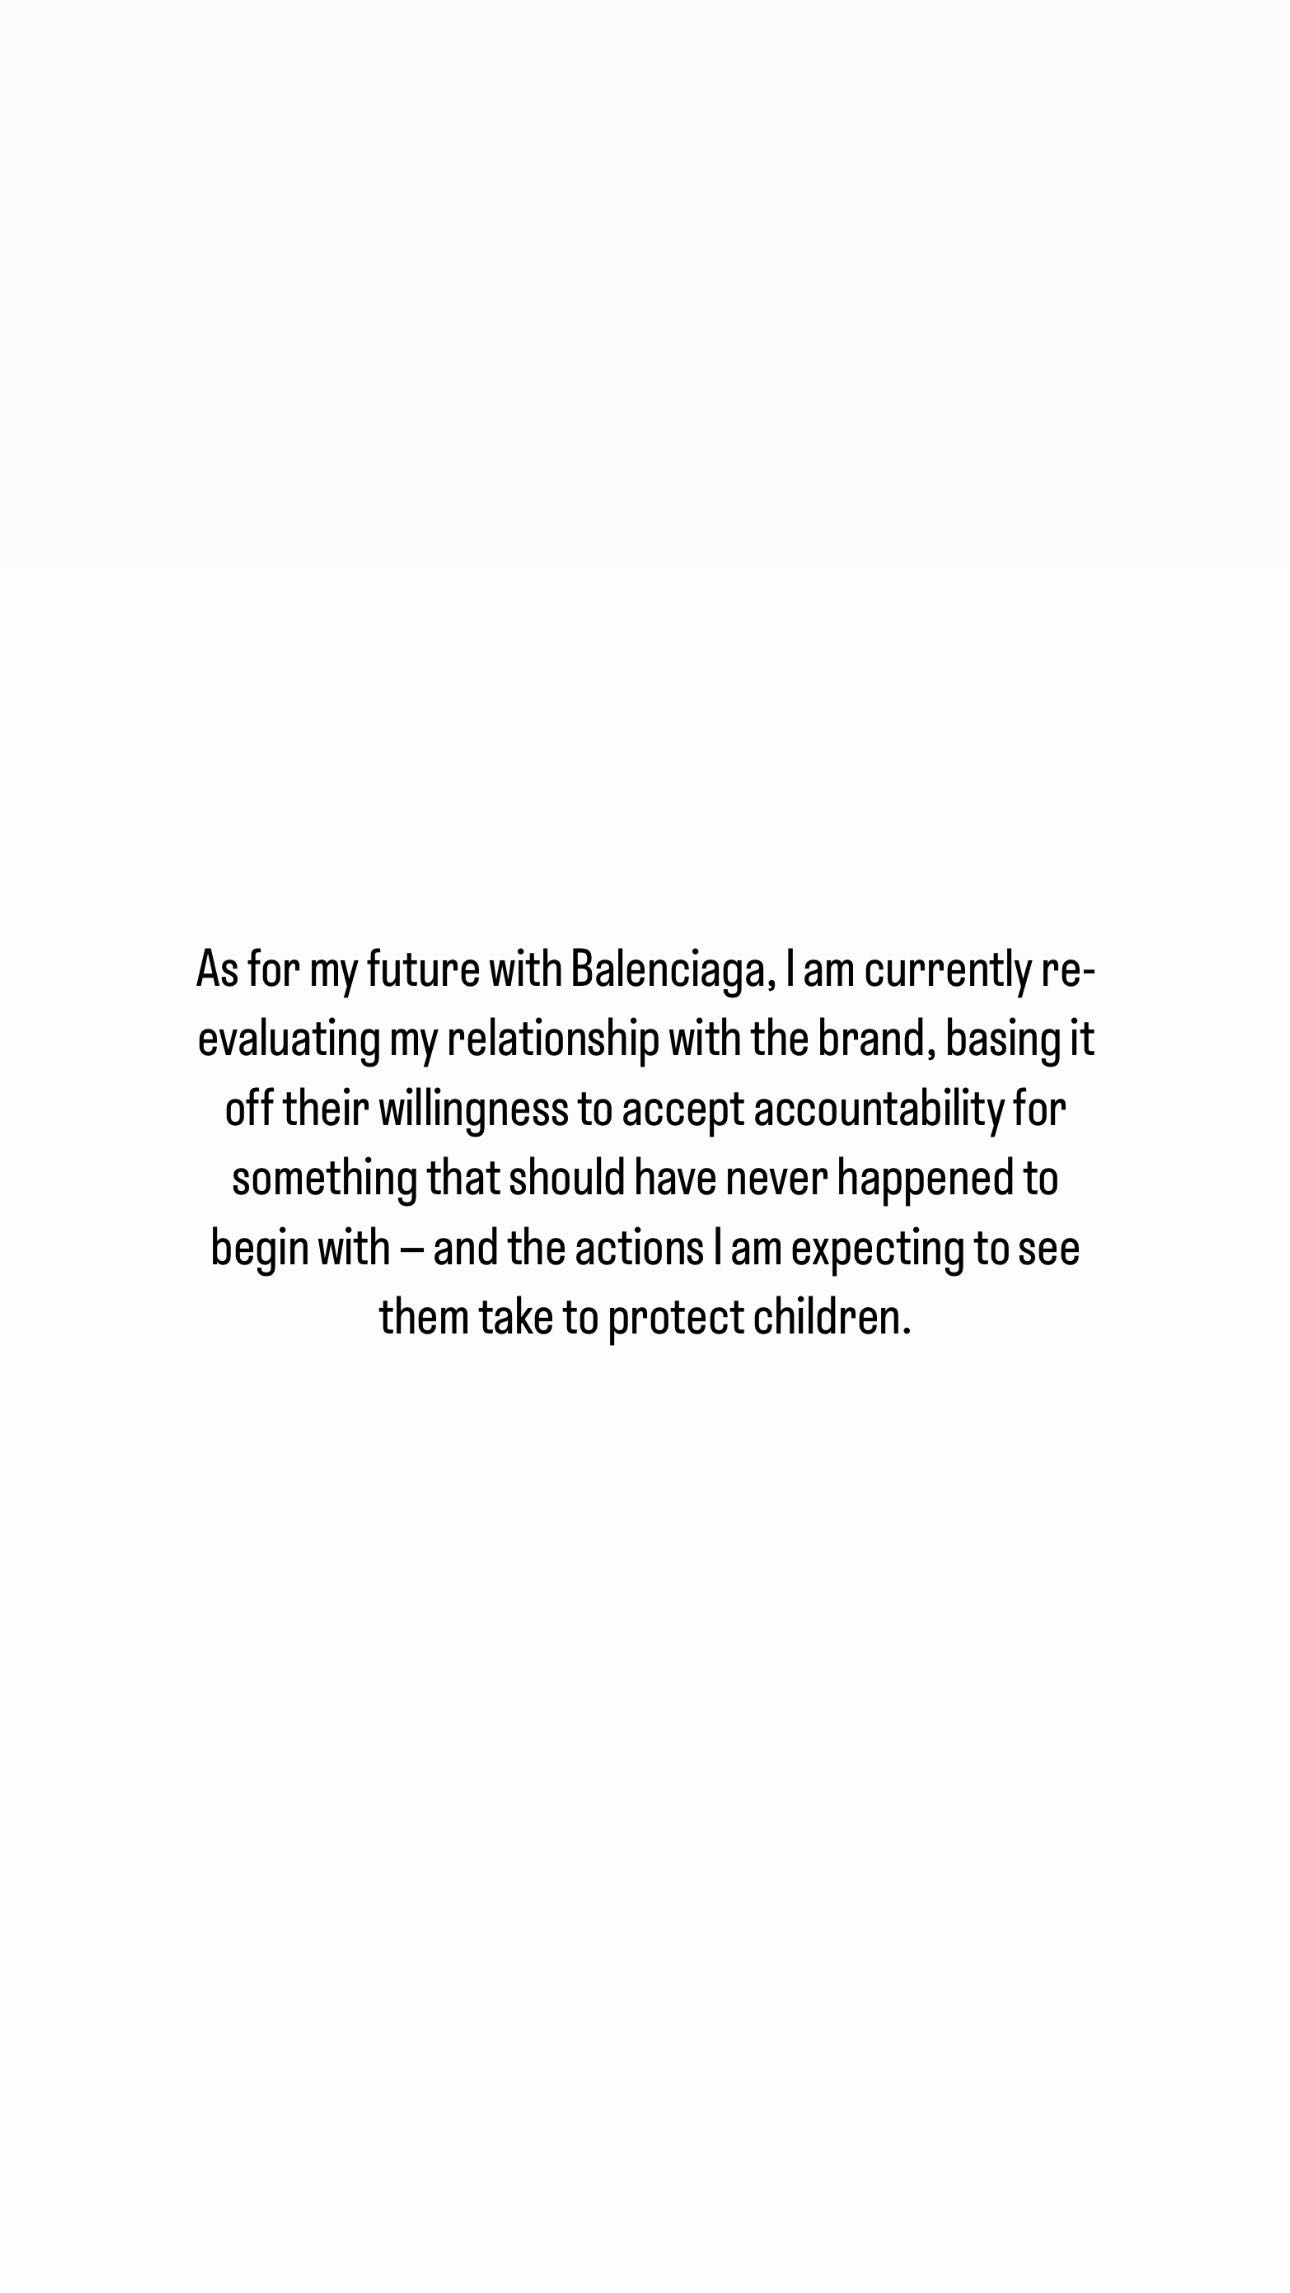 Kim Kardashian declara que está reavaliando seu relacionamento com a Balenciaga. (Reprodução/Instagram) Lorena Bueri